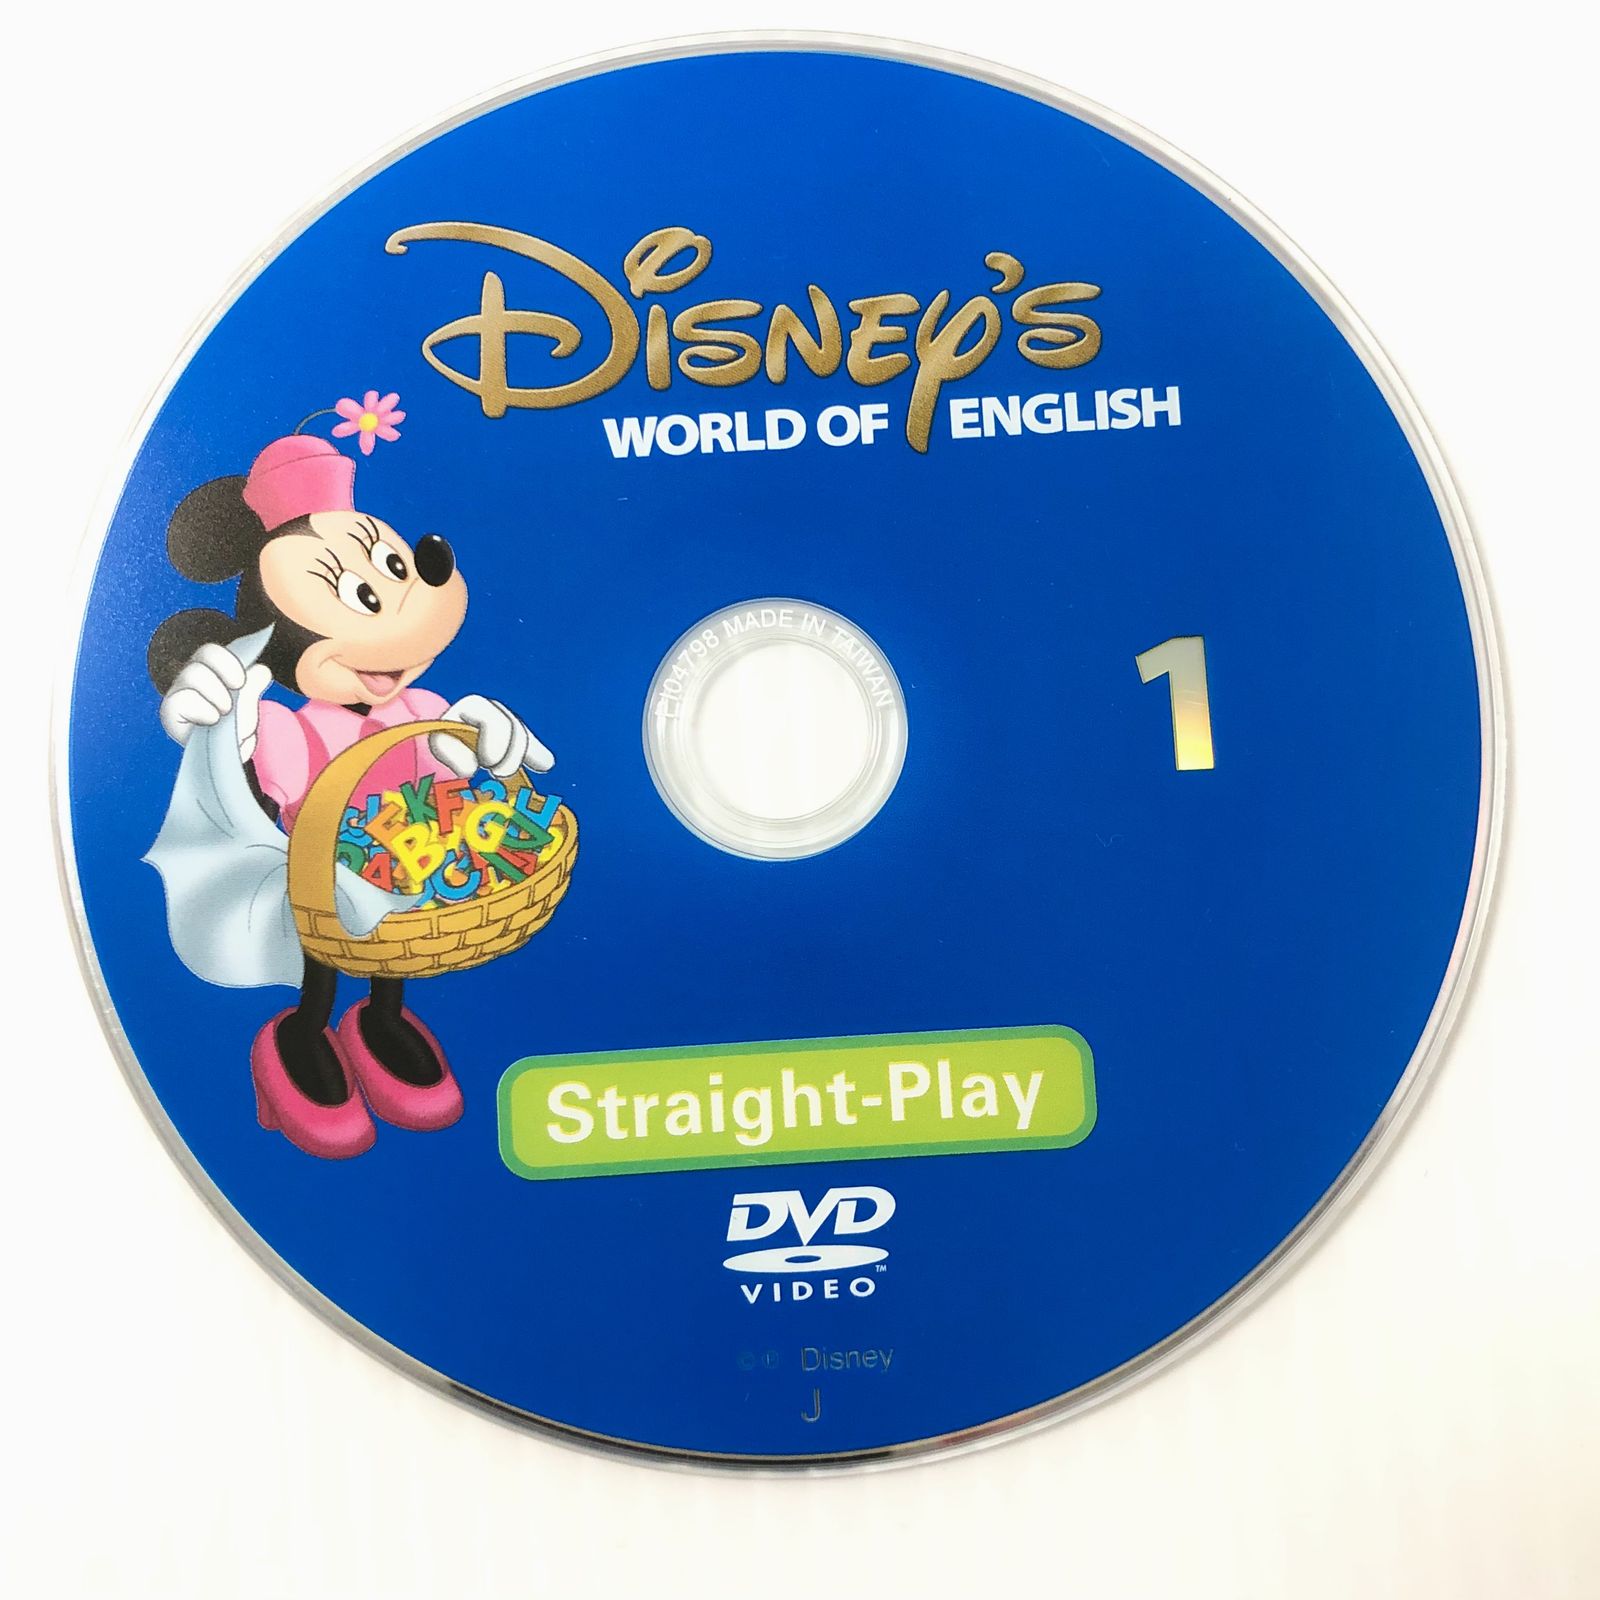 ディズニー英語システム ストレートプレイDVD全12巻セット - DVD 